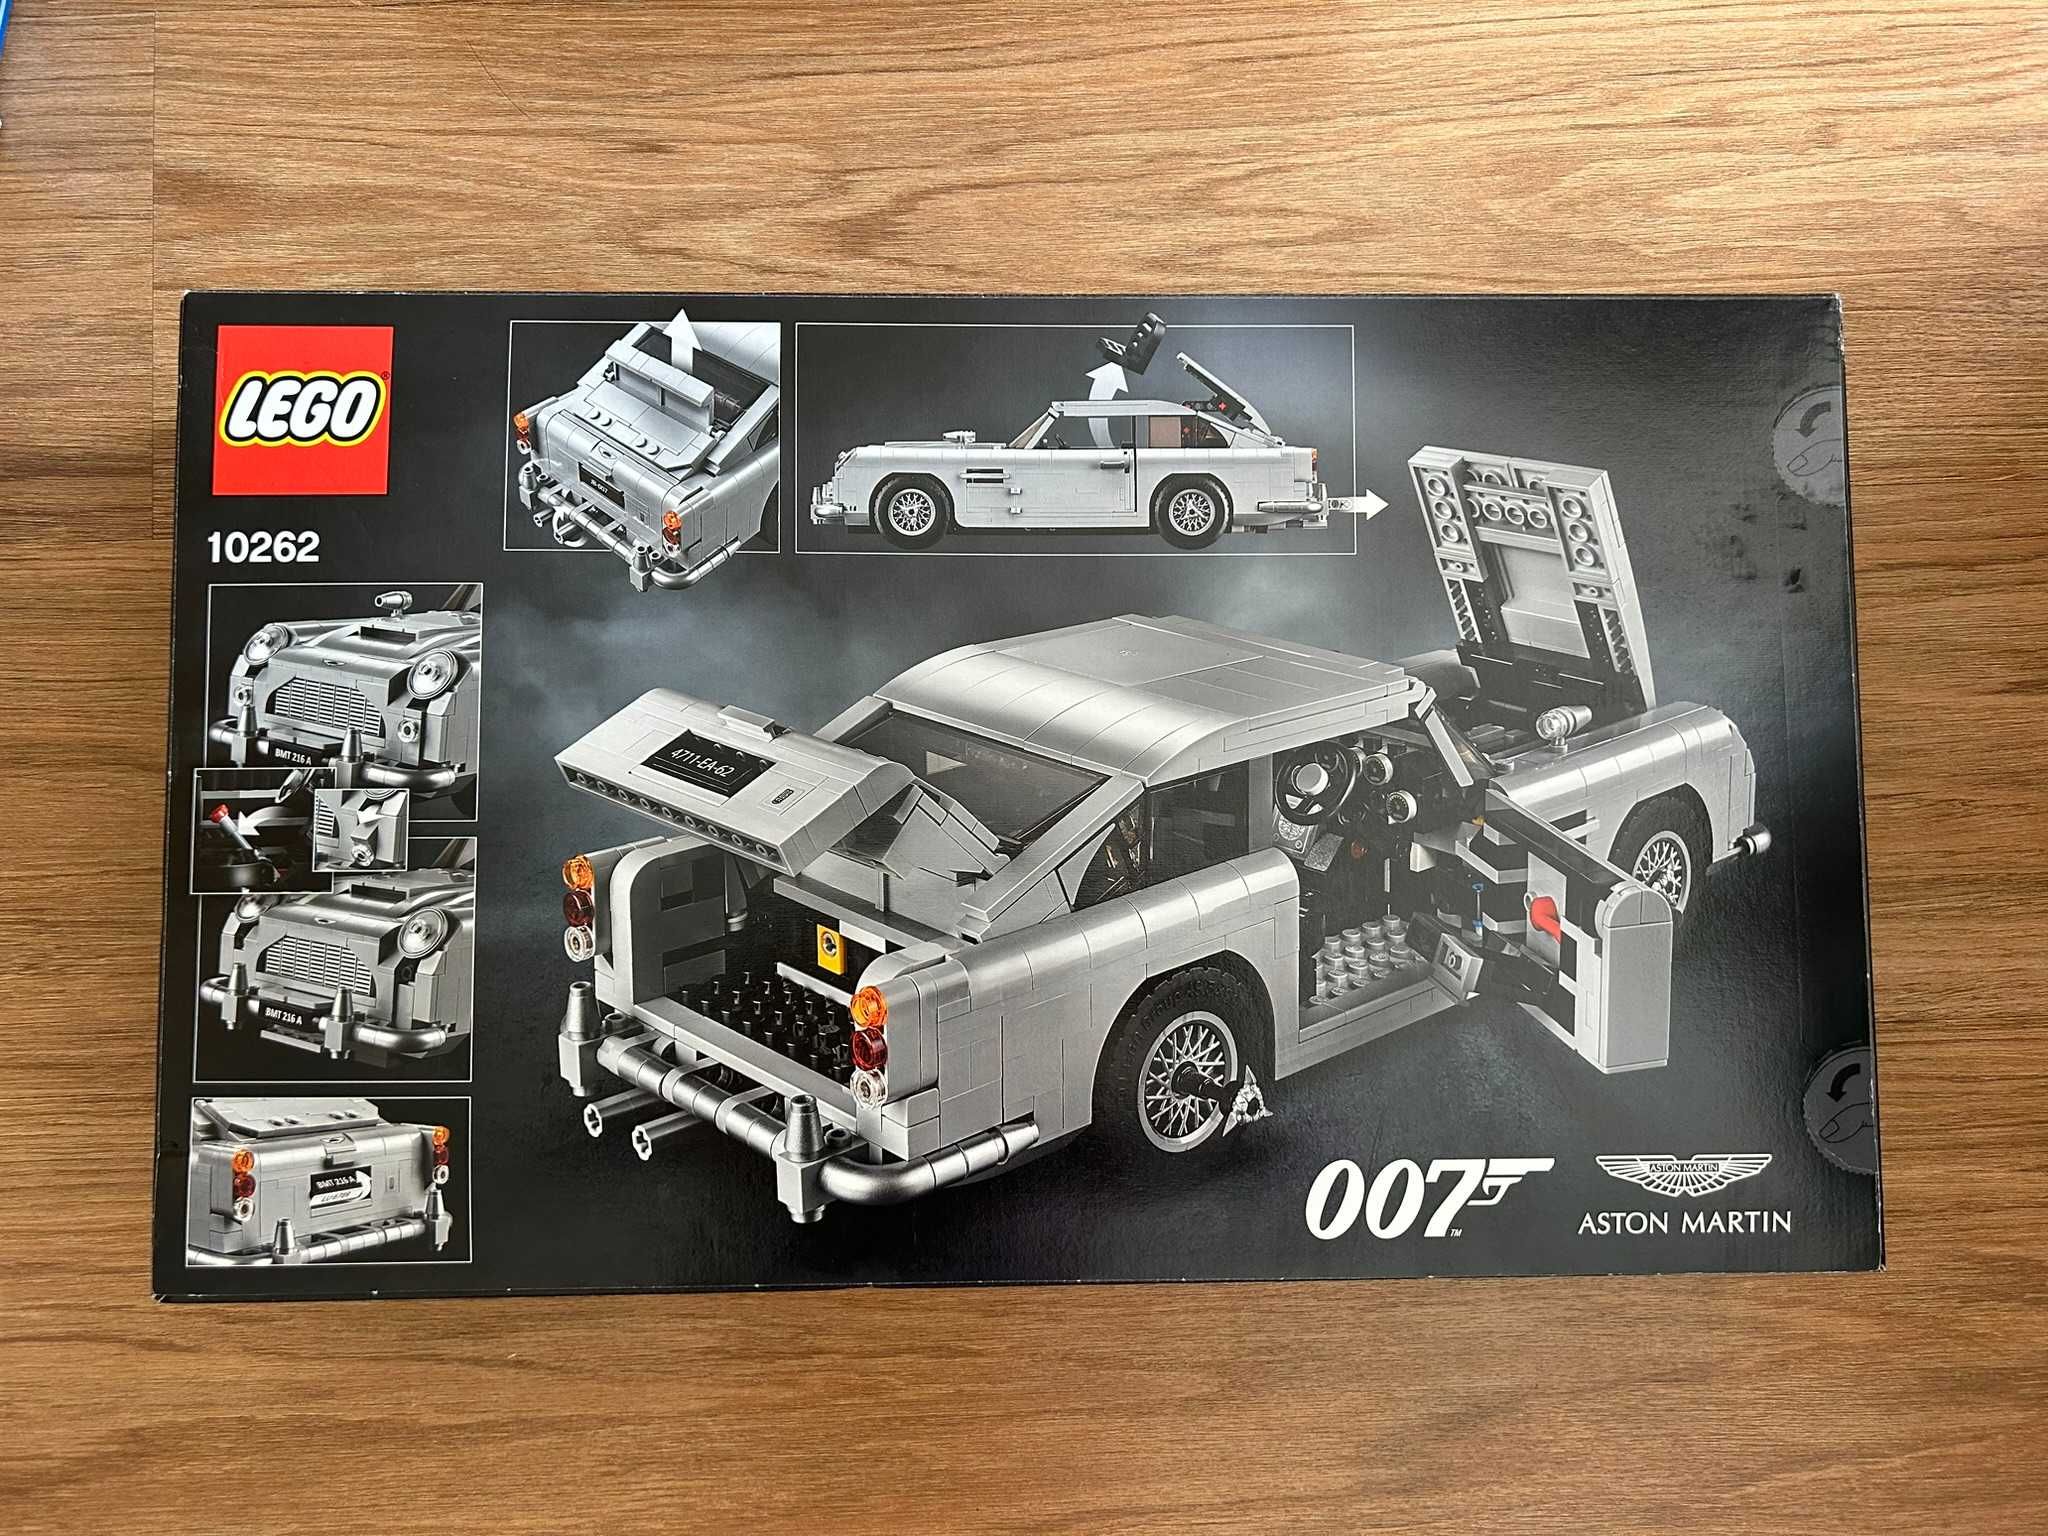 Lego Creator Expert 10262: 007 James Bond Aston Martin NOVO